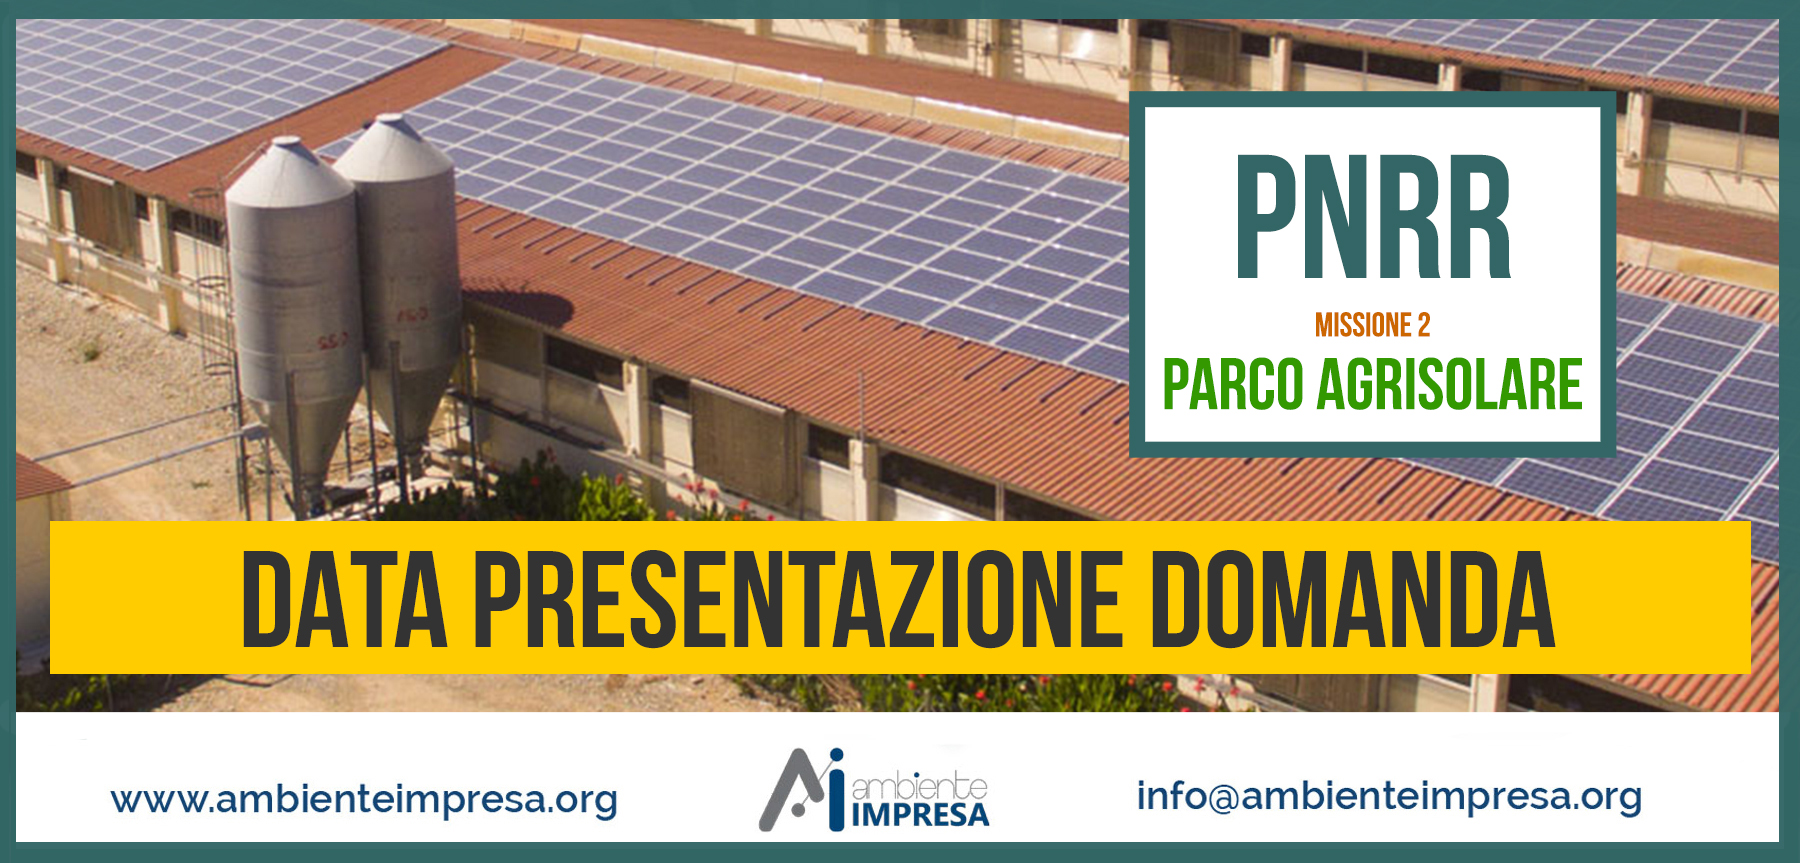 PNRR AGRISOLE - realizzazione di impianti fotovoltaici su edifici a uso produttivo nei settori agricolo, zootecnico e agroindustriale - Ambiente Impresa srl - Cagliariari